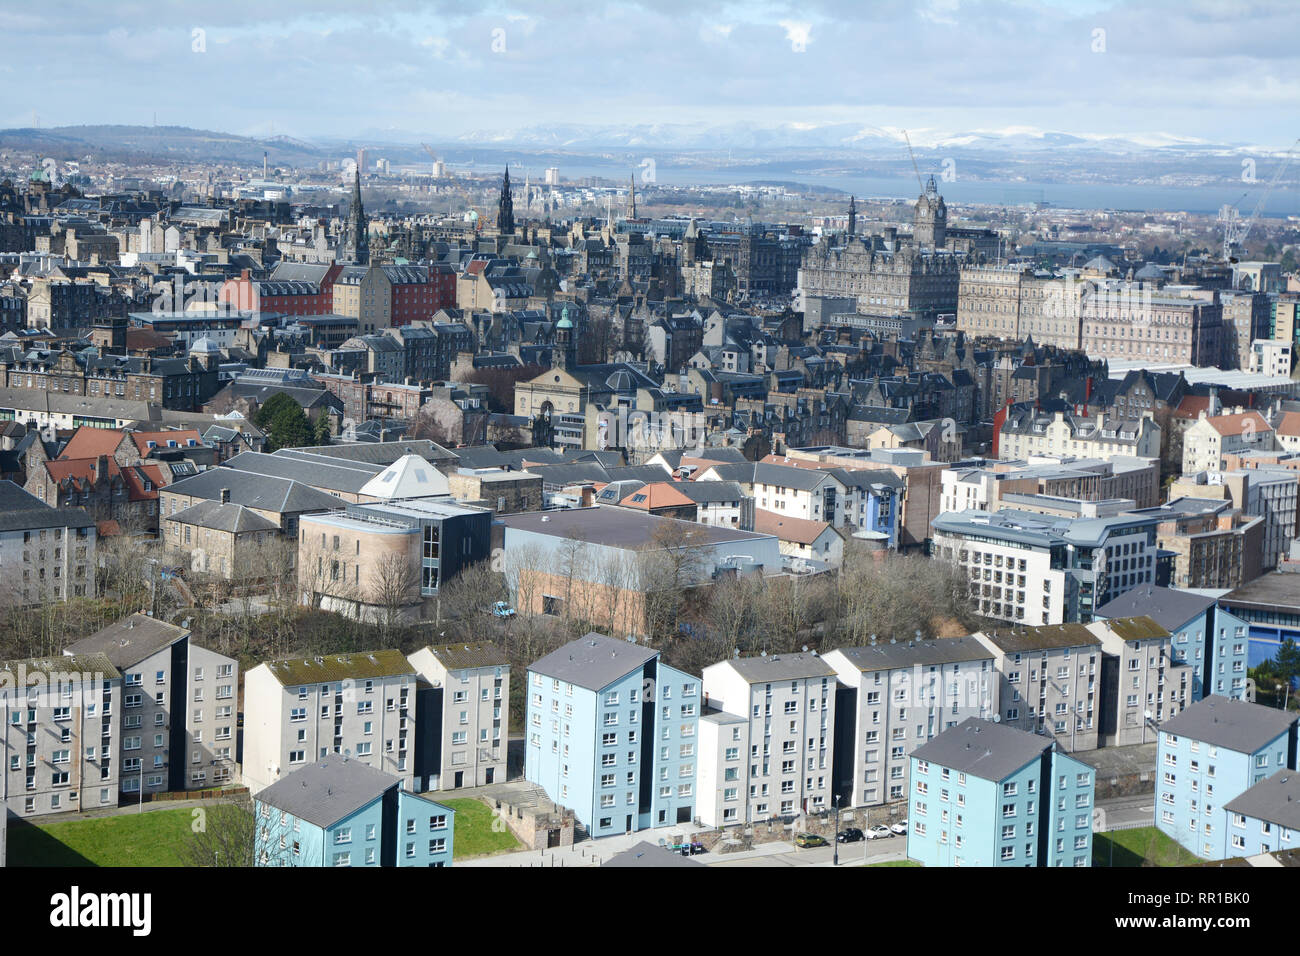 Ein stadtbild Blick auf die mittelalterliche Altstadt von der Innenstadt von Edinburgh, und seine neueren Außenbezirke, von Arthur's Seat, Schottland, Vereinigtes Königreich. Stockfoto